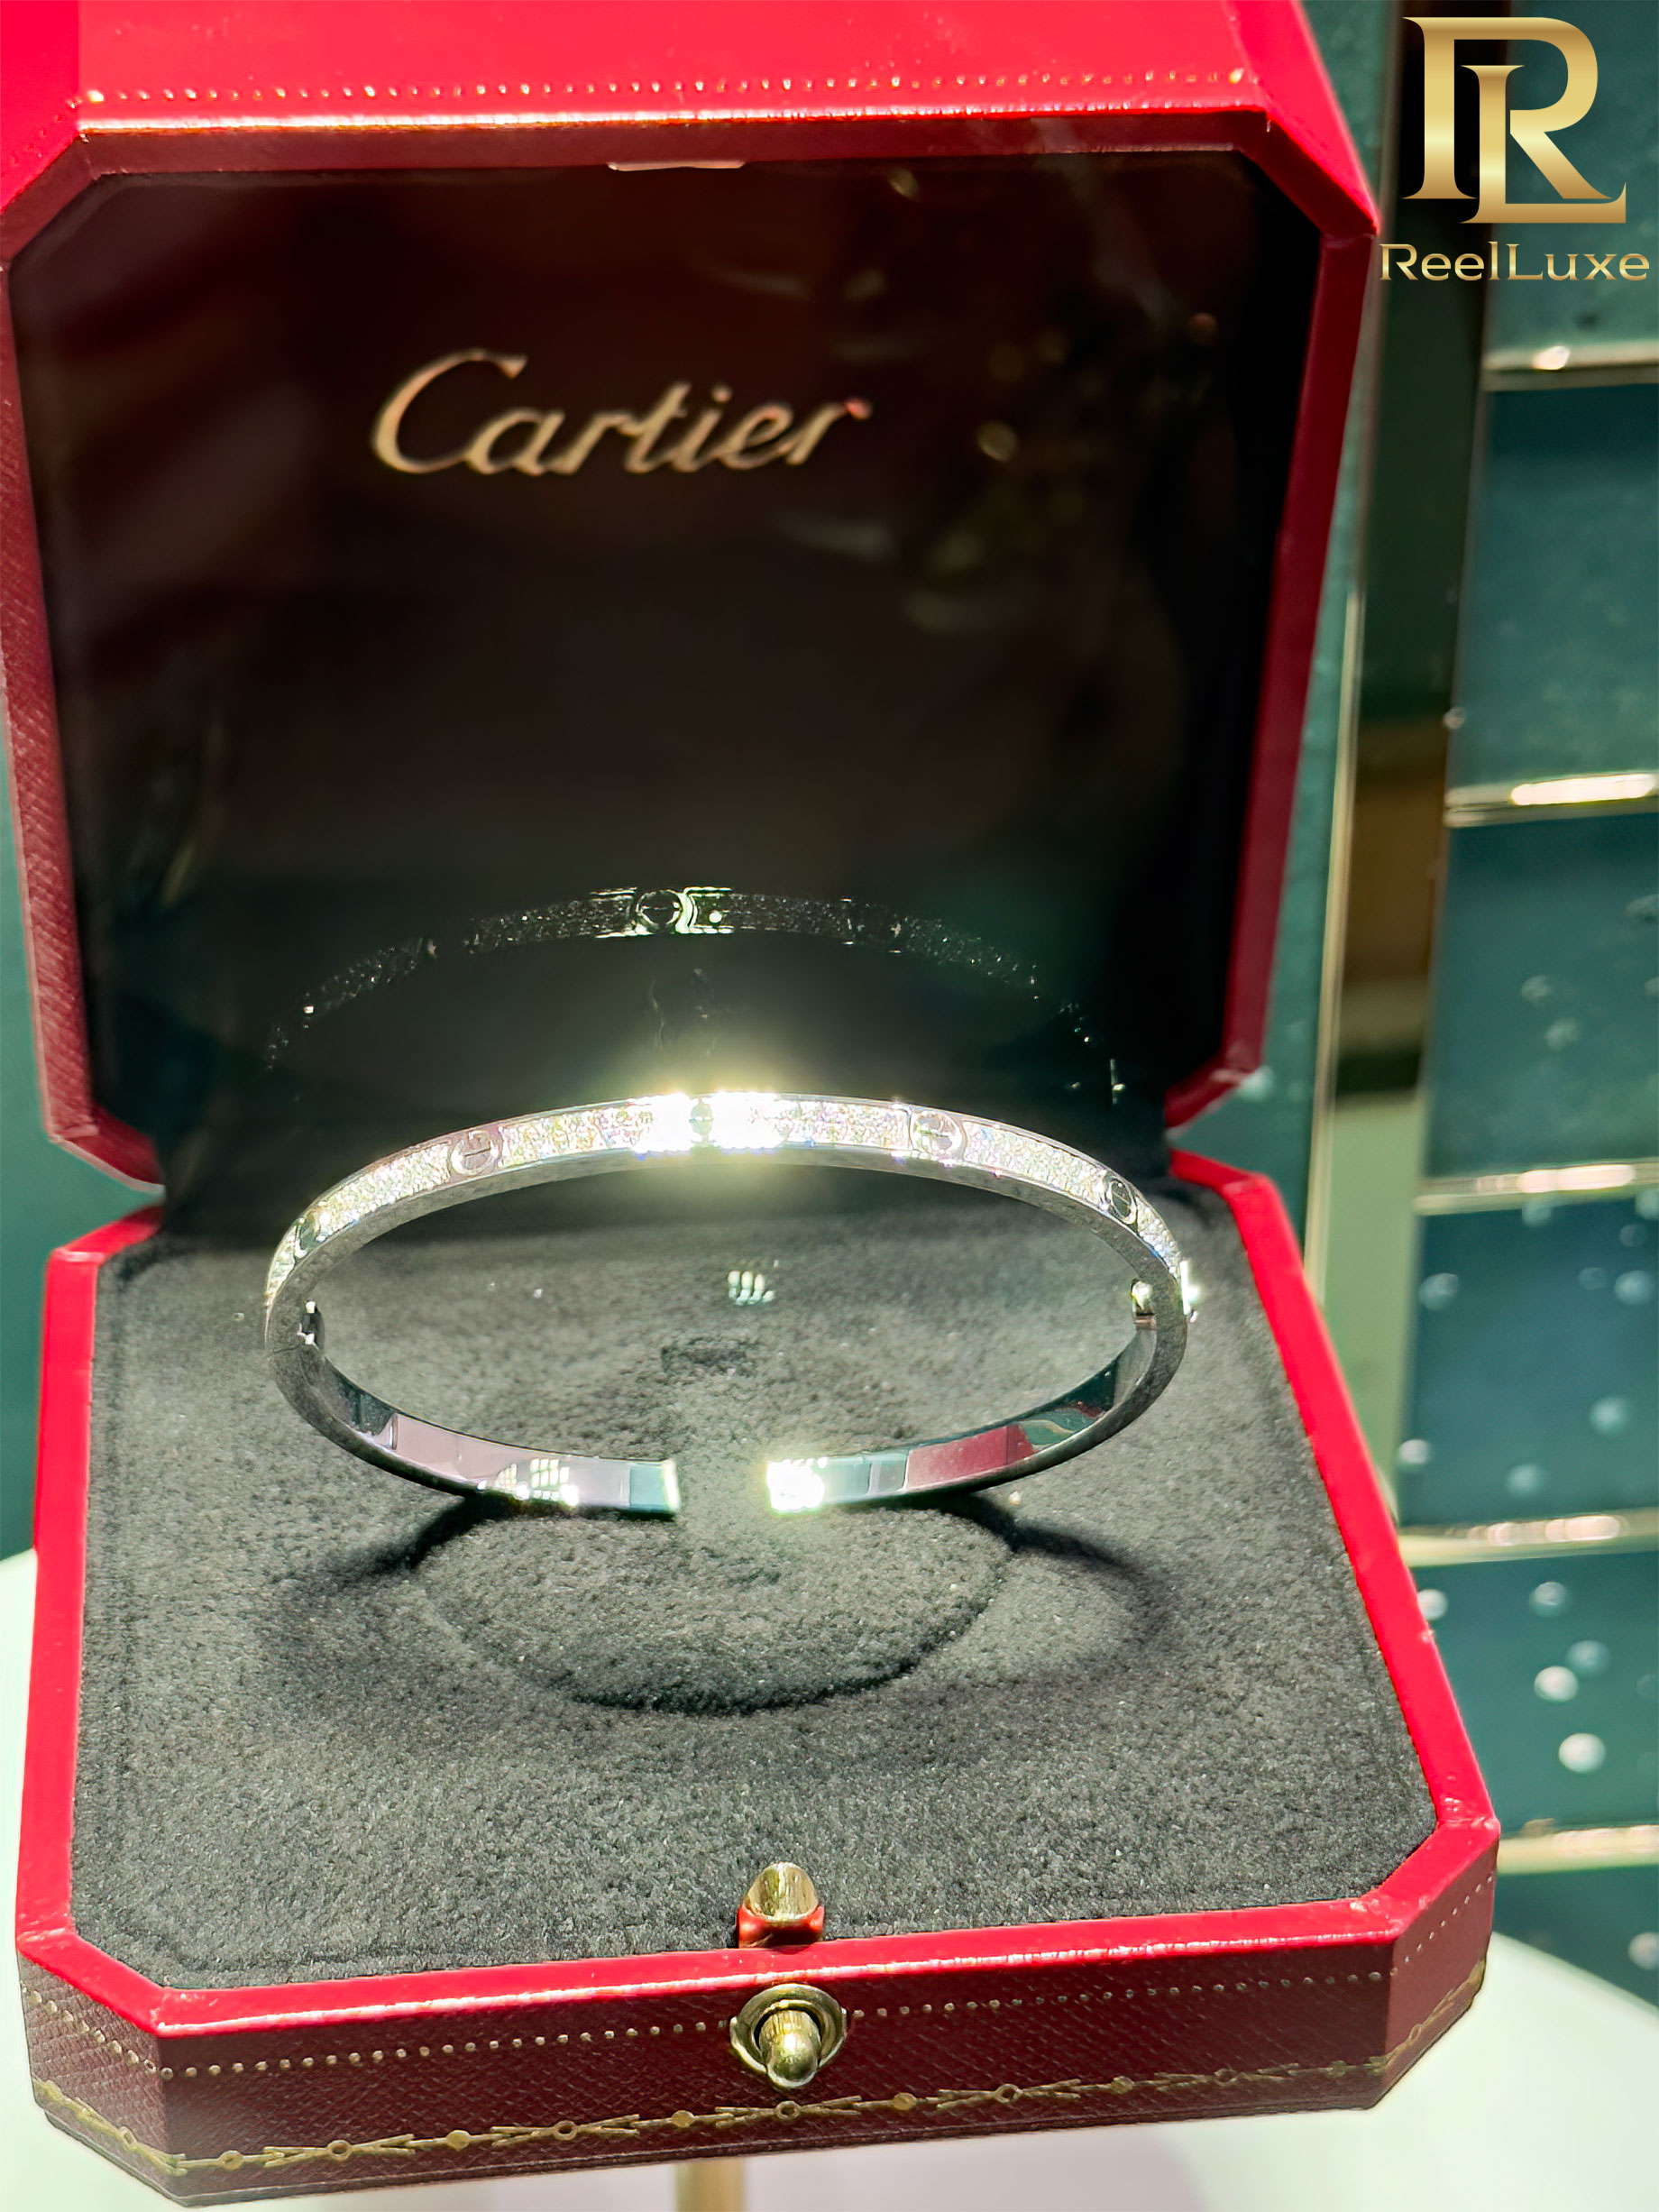 Bracelet LOVE Cartier pavé de diamants, or blanc 18 carats – Boutique Cartier Firenze – Florence, Italie